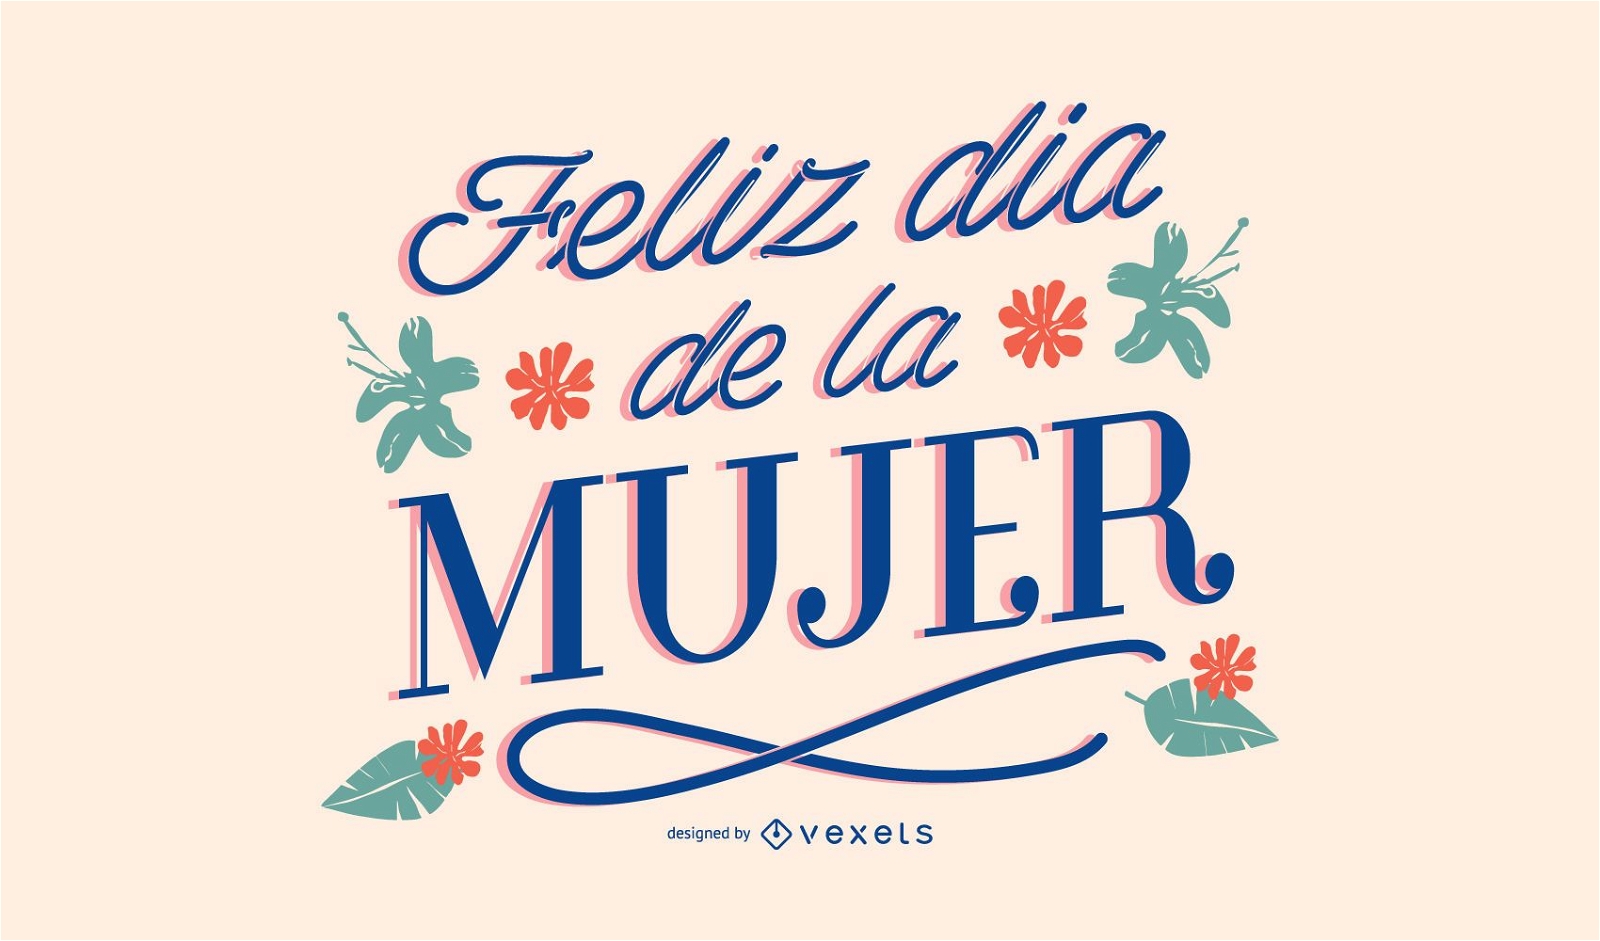 Feliz dia da mulher letras em espanhol